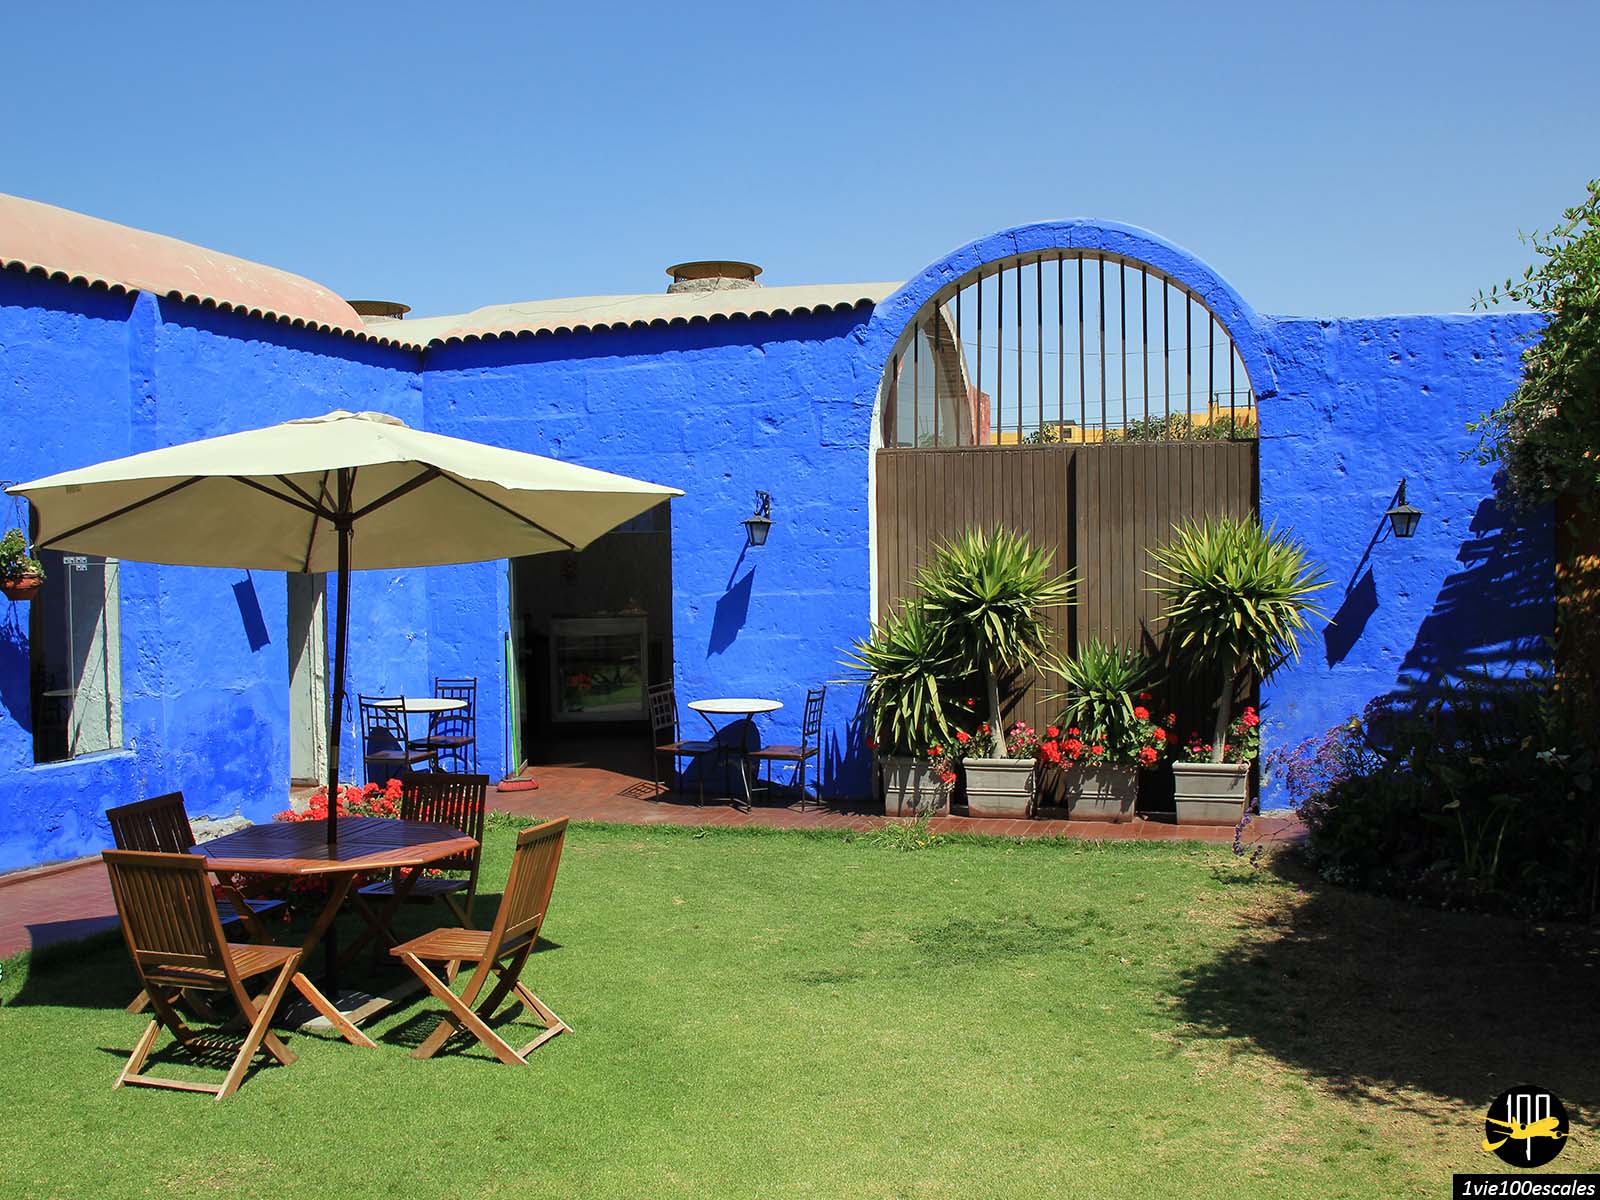 Le jardin de la cafeteria du couvent Santa Catalina d'Arequipa au Pérou